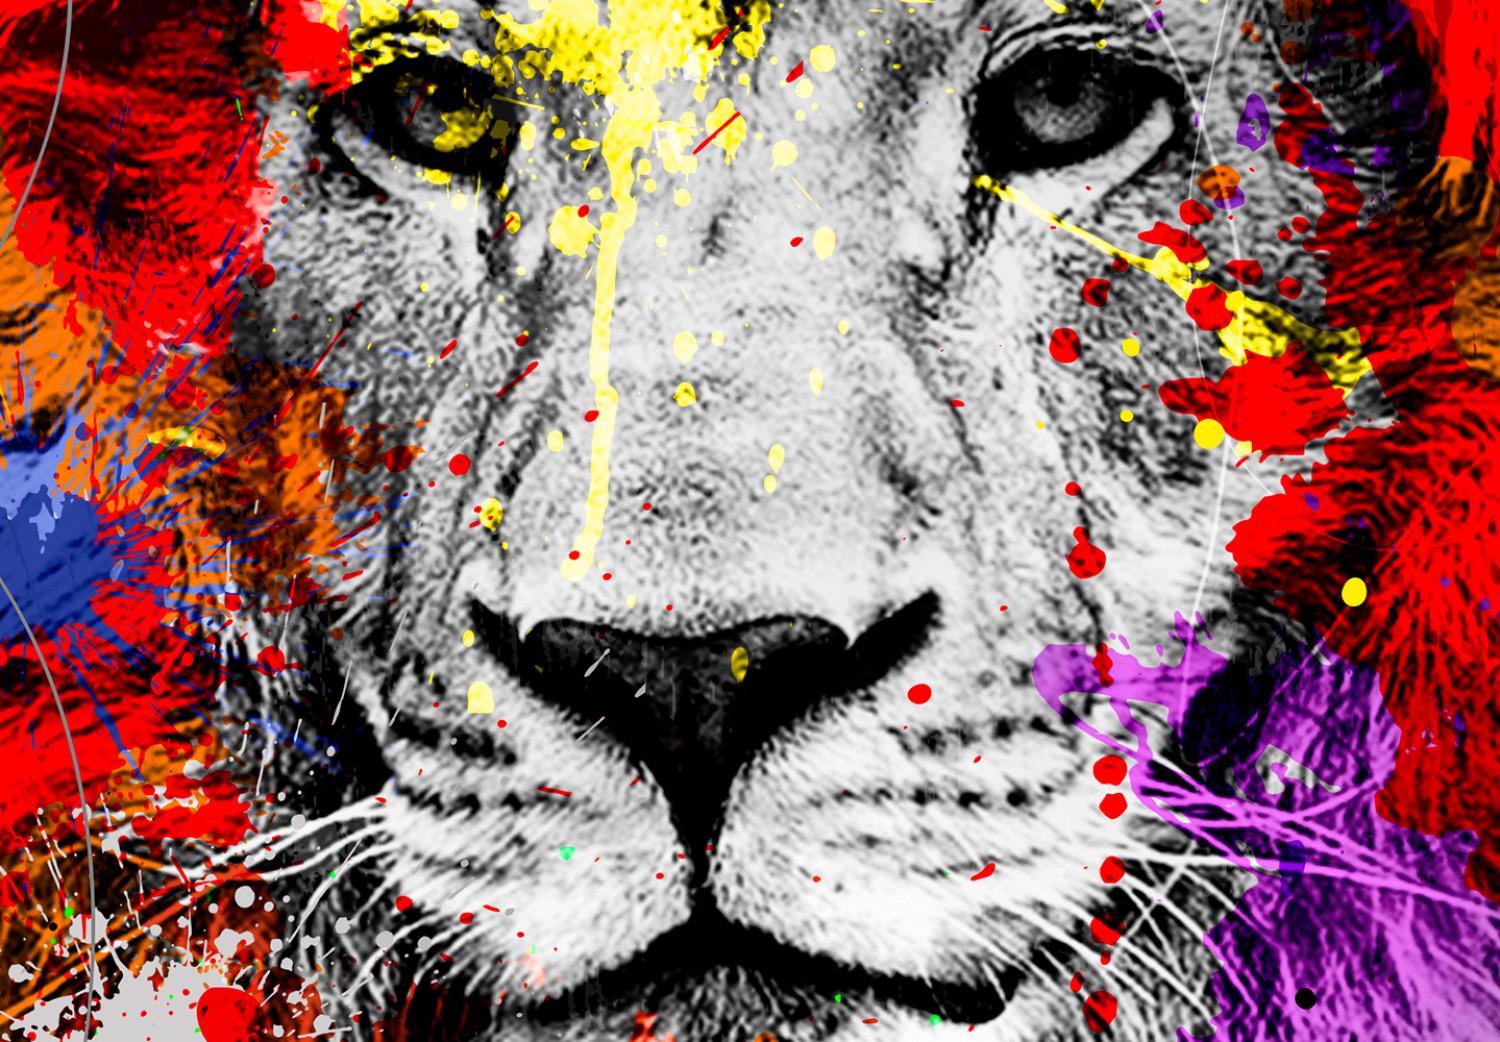 Canvas Colourful Animals: Lion (1 Part) Vertical